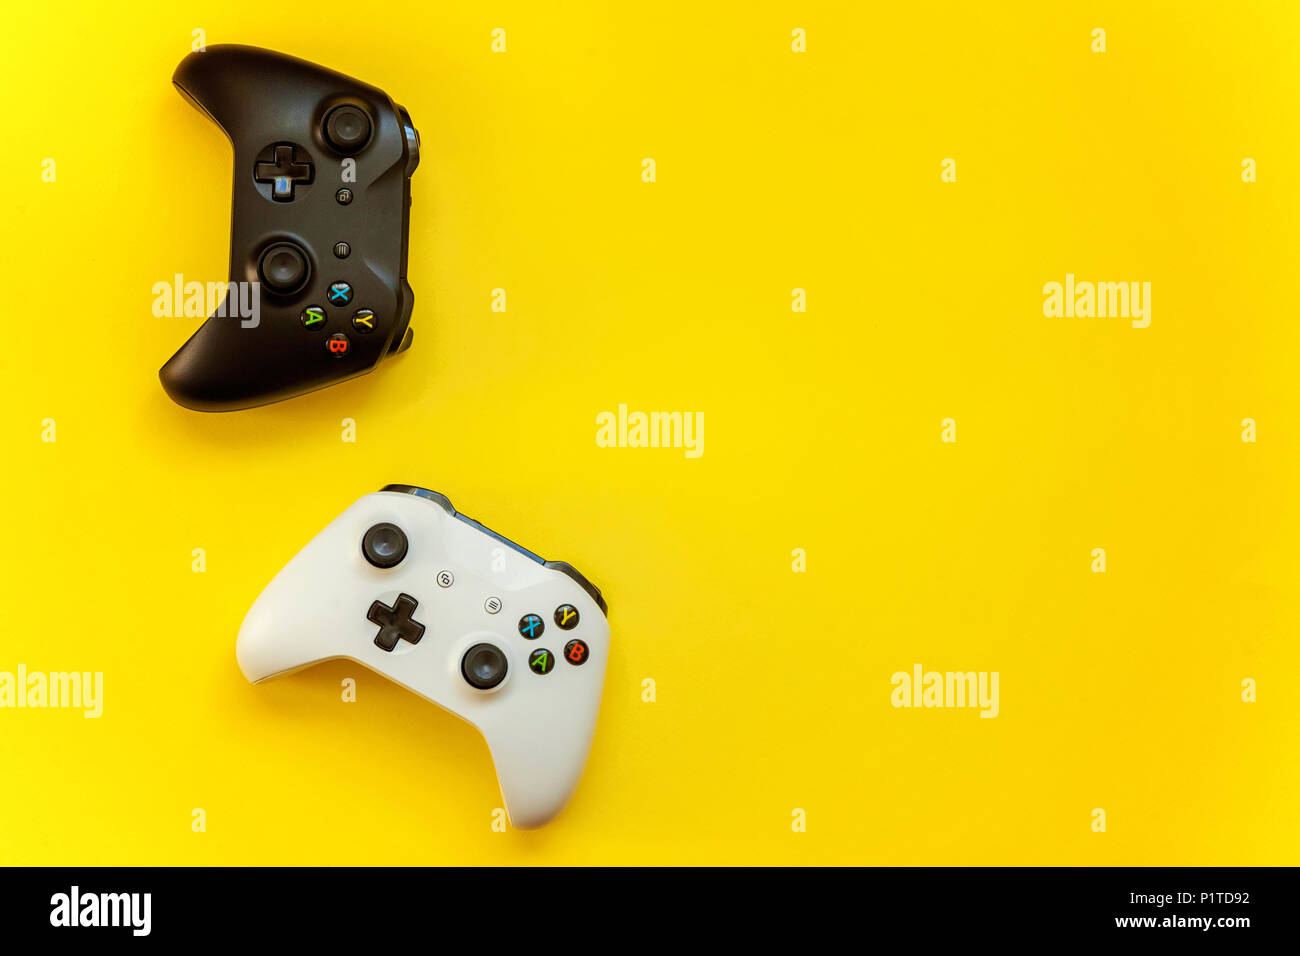 San Petersburgo, Rusia - Abril 13, 2018: blanco y negro joystick gamepad Xbox uno s, consola de juegos sobre fondo amarillo. Competencia de juegos de ordenador Foto de stock